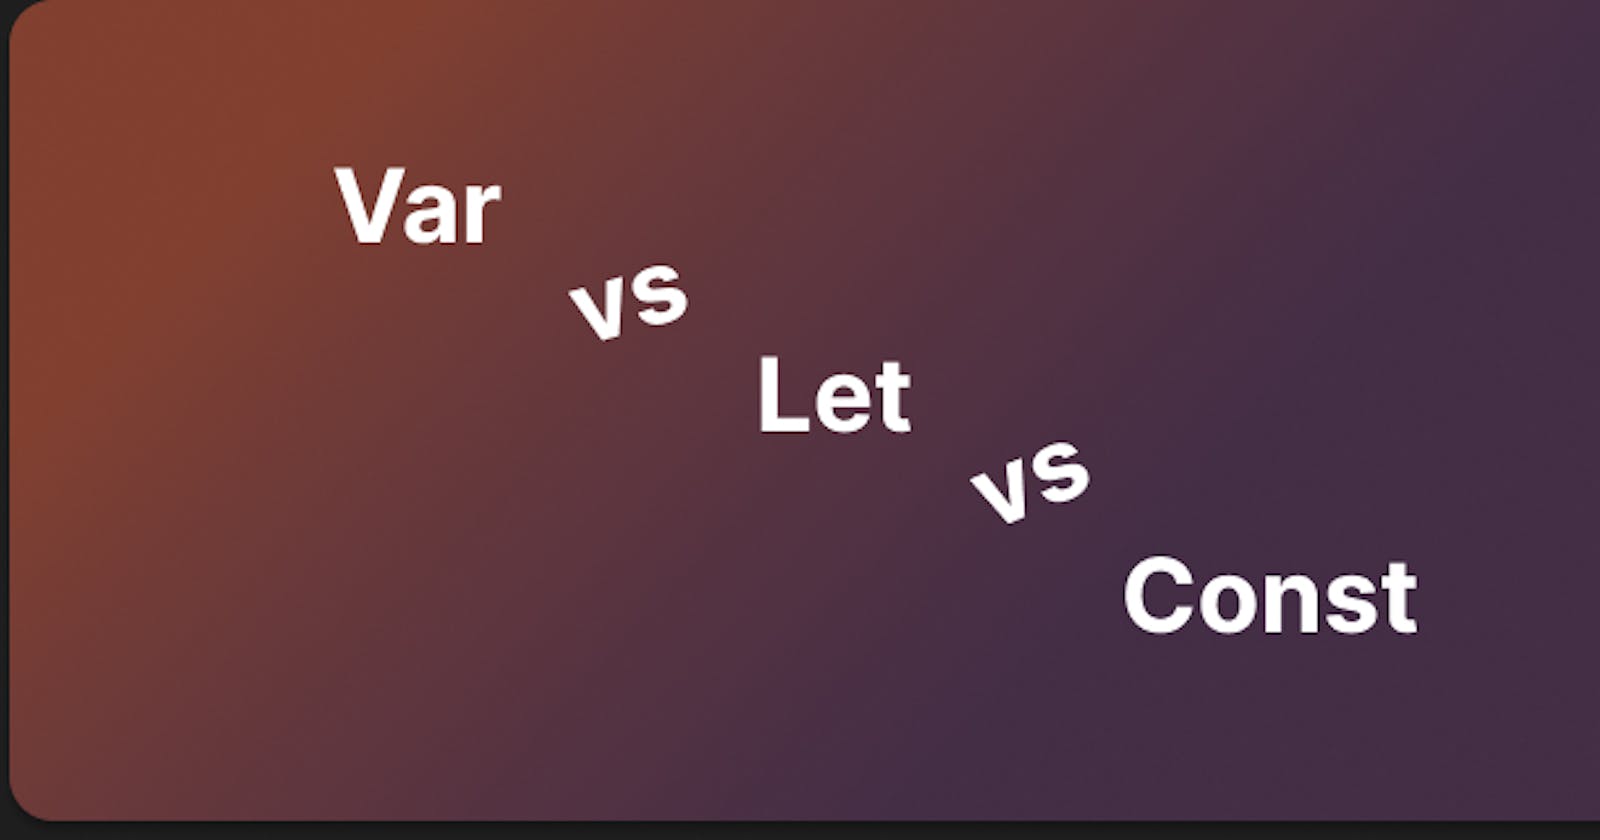 Var vs Let vs Const